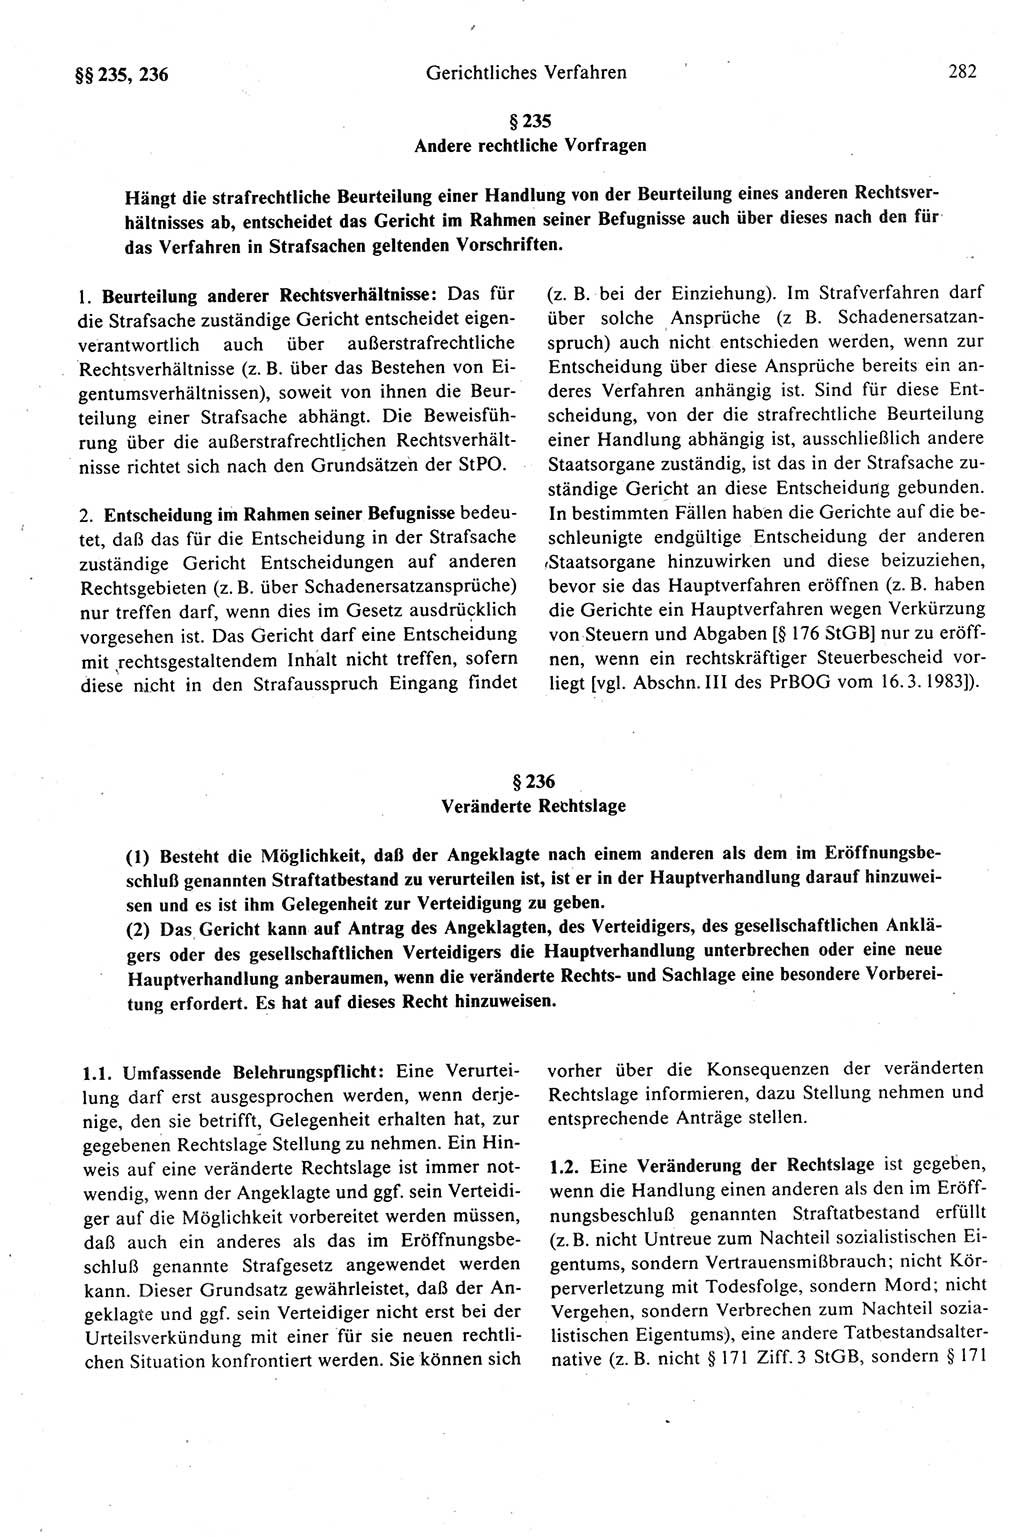 Strafprozeßrecht der DDR (Deutsche Demokratische Republik), Kommentar zur Strafprozeßordnung (StPO) 1989, Seite 282 (Strafprozeßr. DDR Komm. StPO 1989, S. 282)